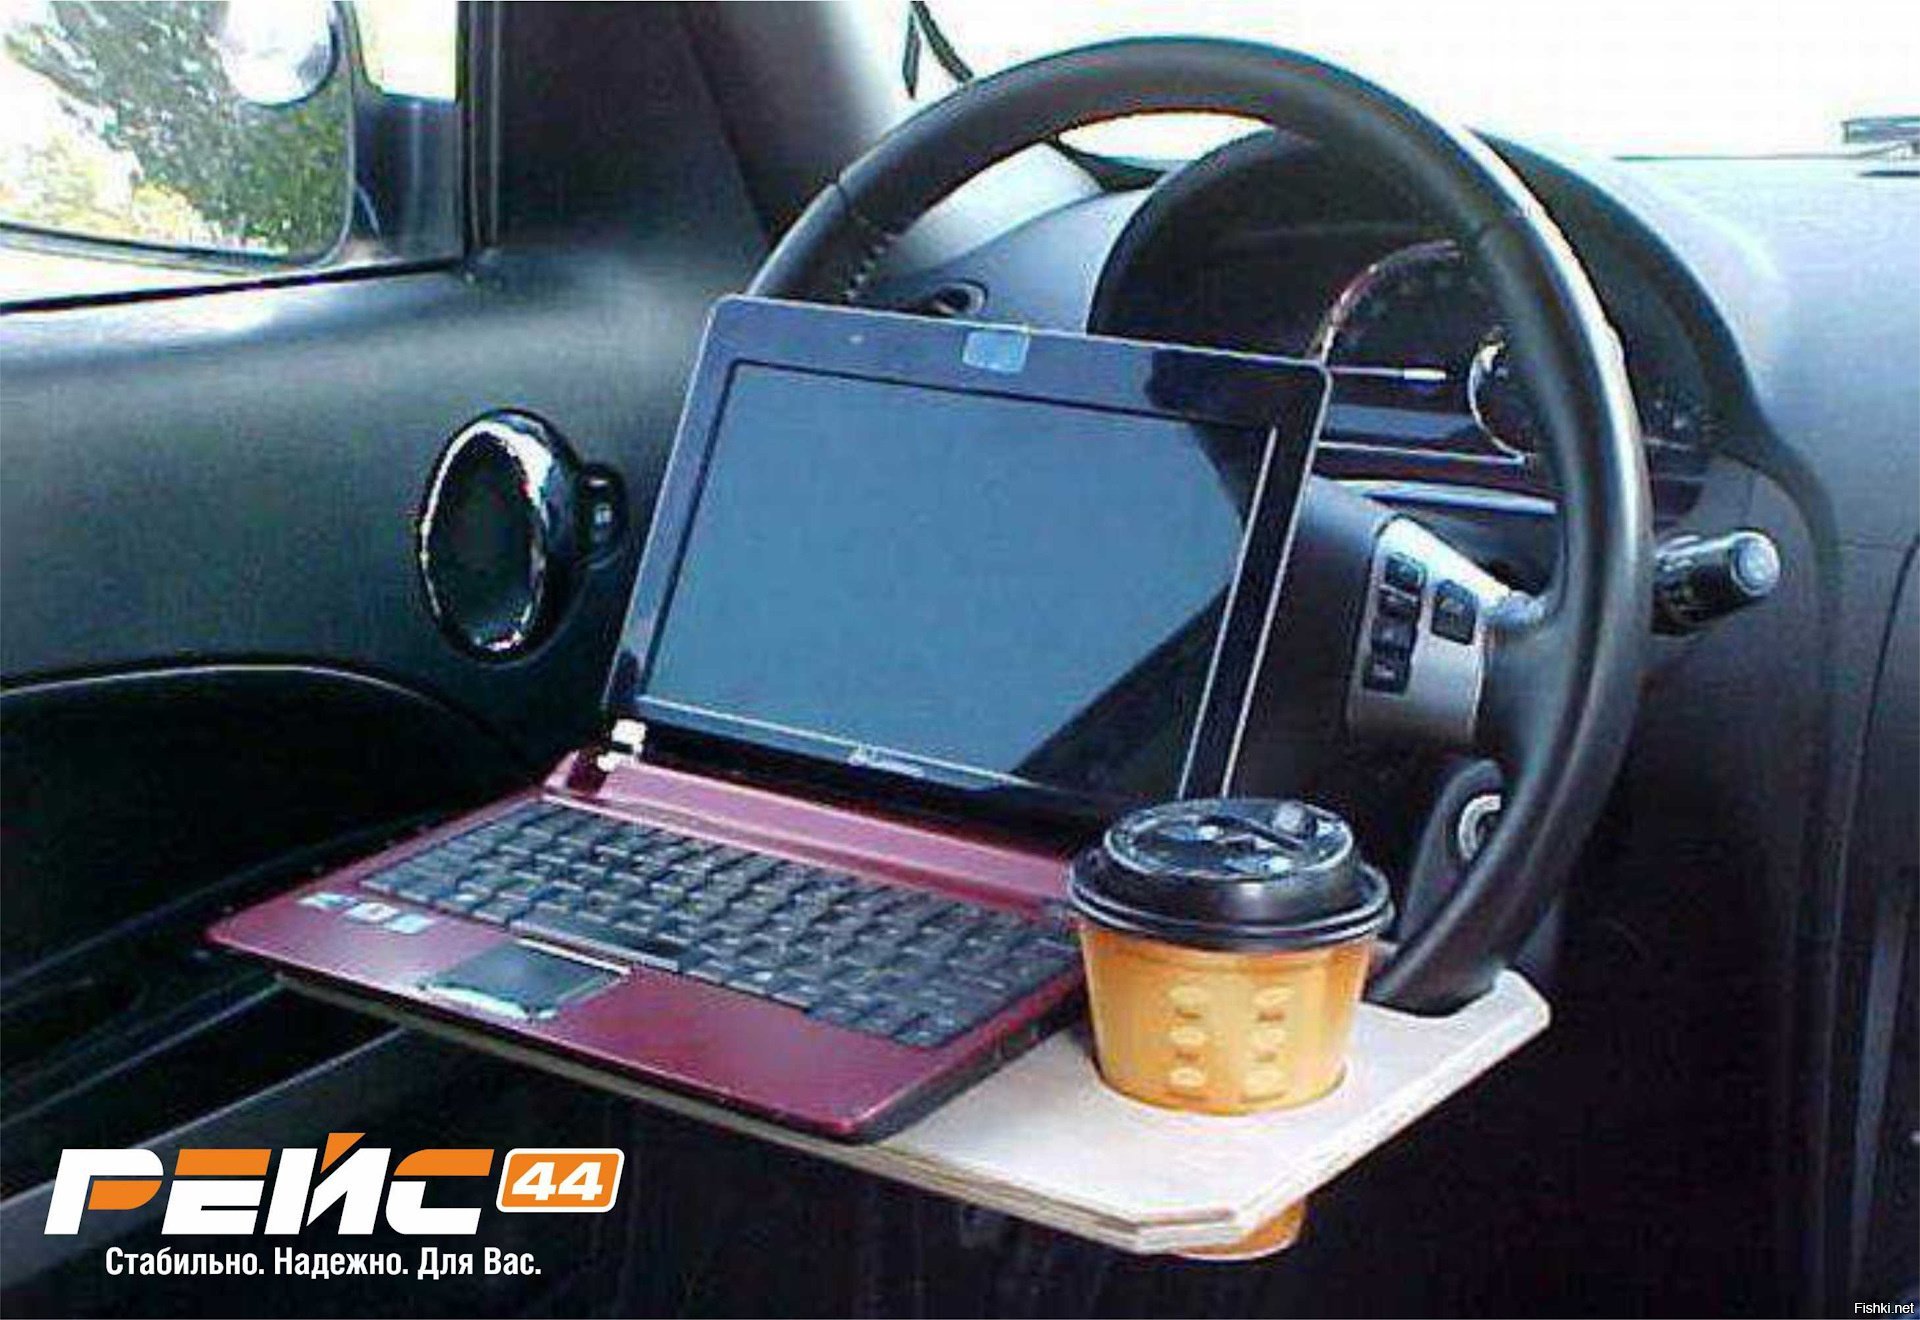 Столик на руль. Столик на руль автомобиля. Стол для ноутбука в машину. Подставка для ноутбука в машину. Ноутбук в машине.